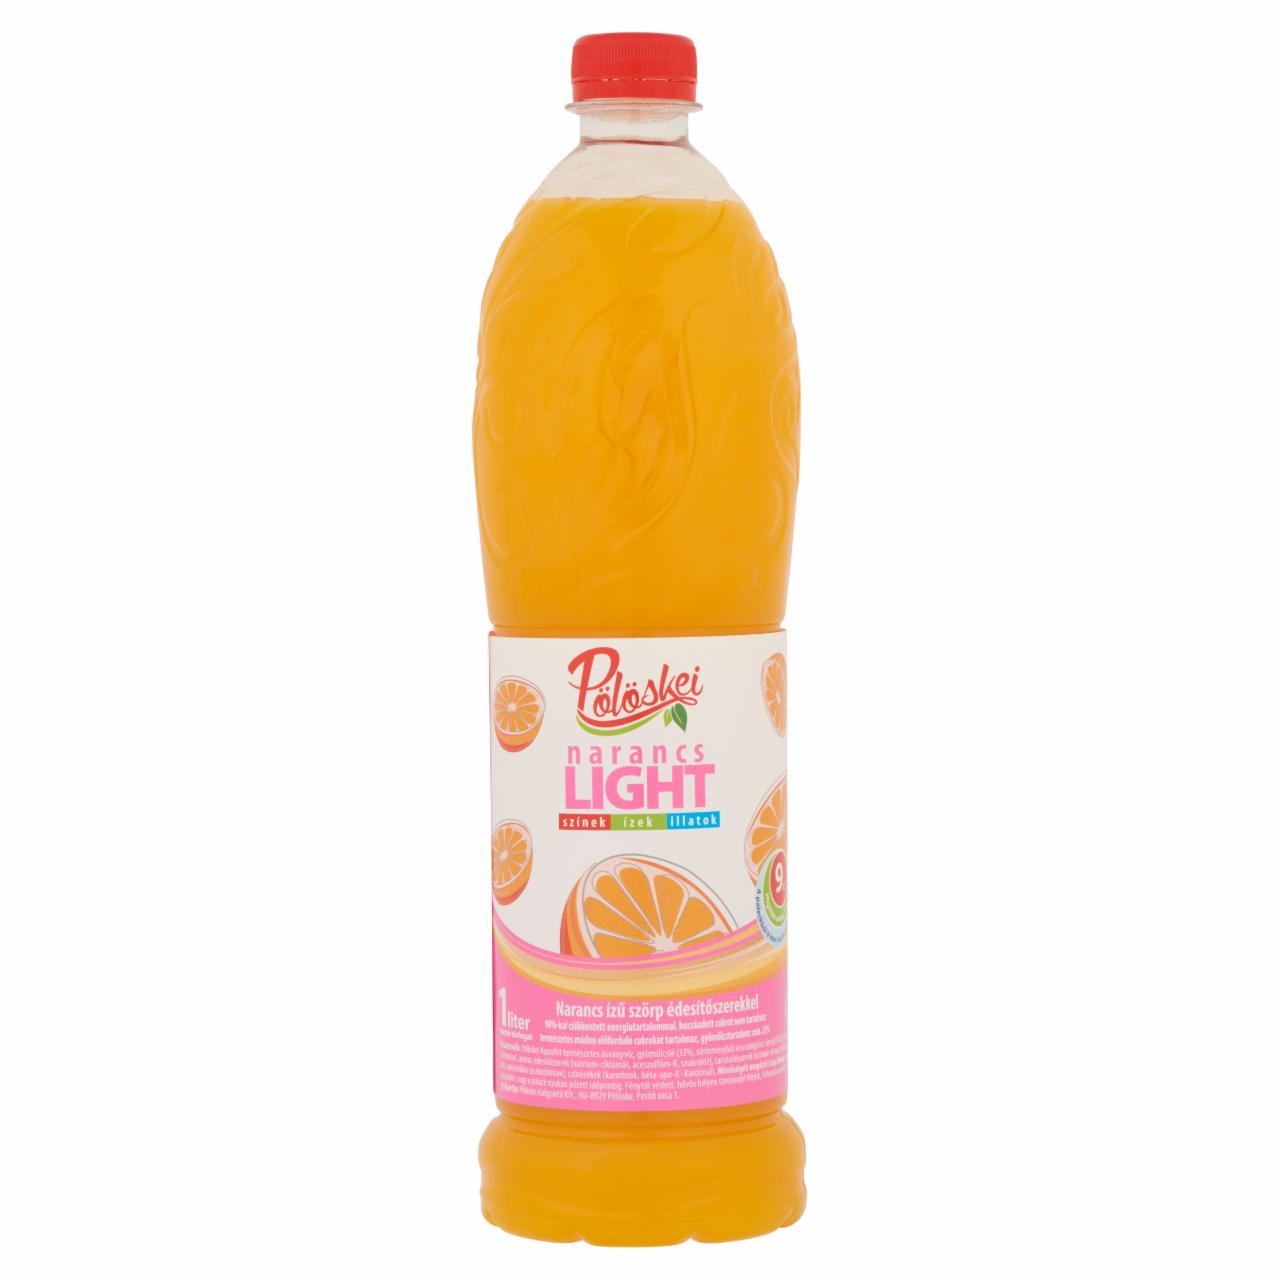 Képek - Pölöskei Light narancs ízű szörp édesítőszerekkel 1 l